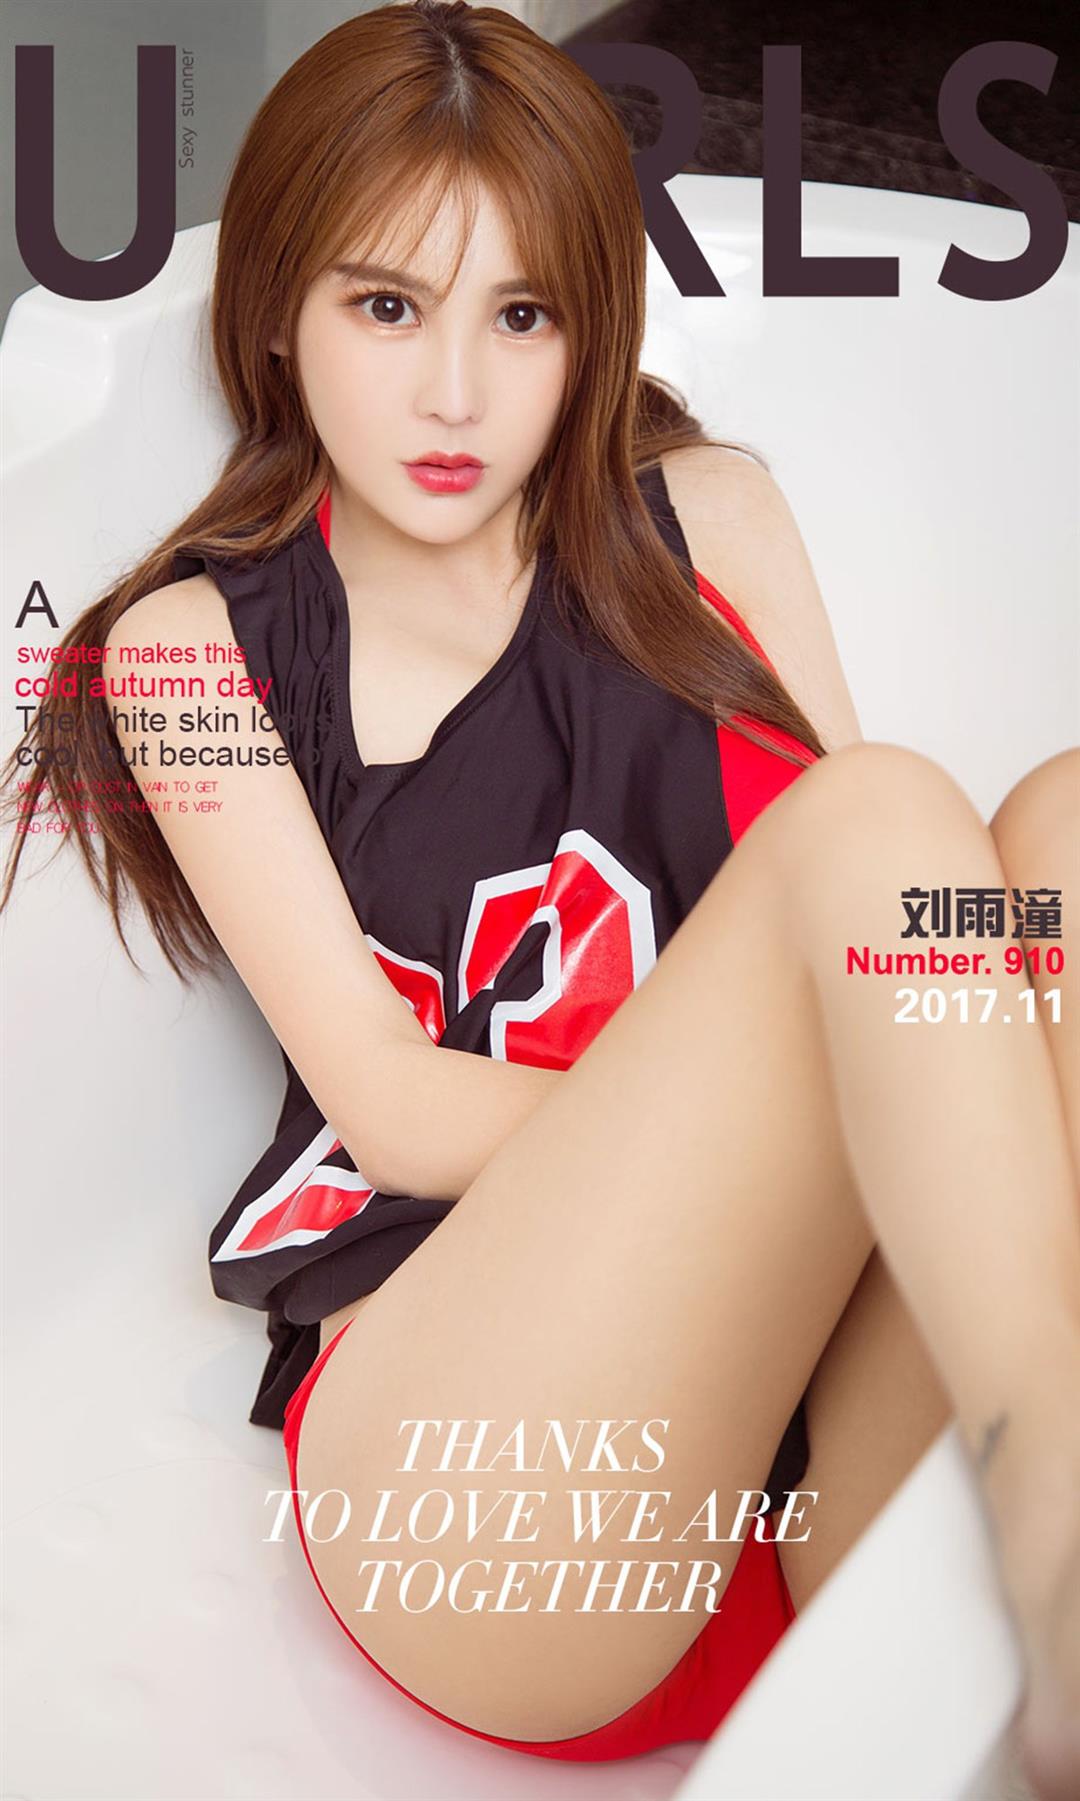 Ugirls爱尤物 2017刊APP No.910 刘雨潼 - 19.jpg